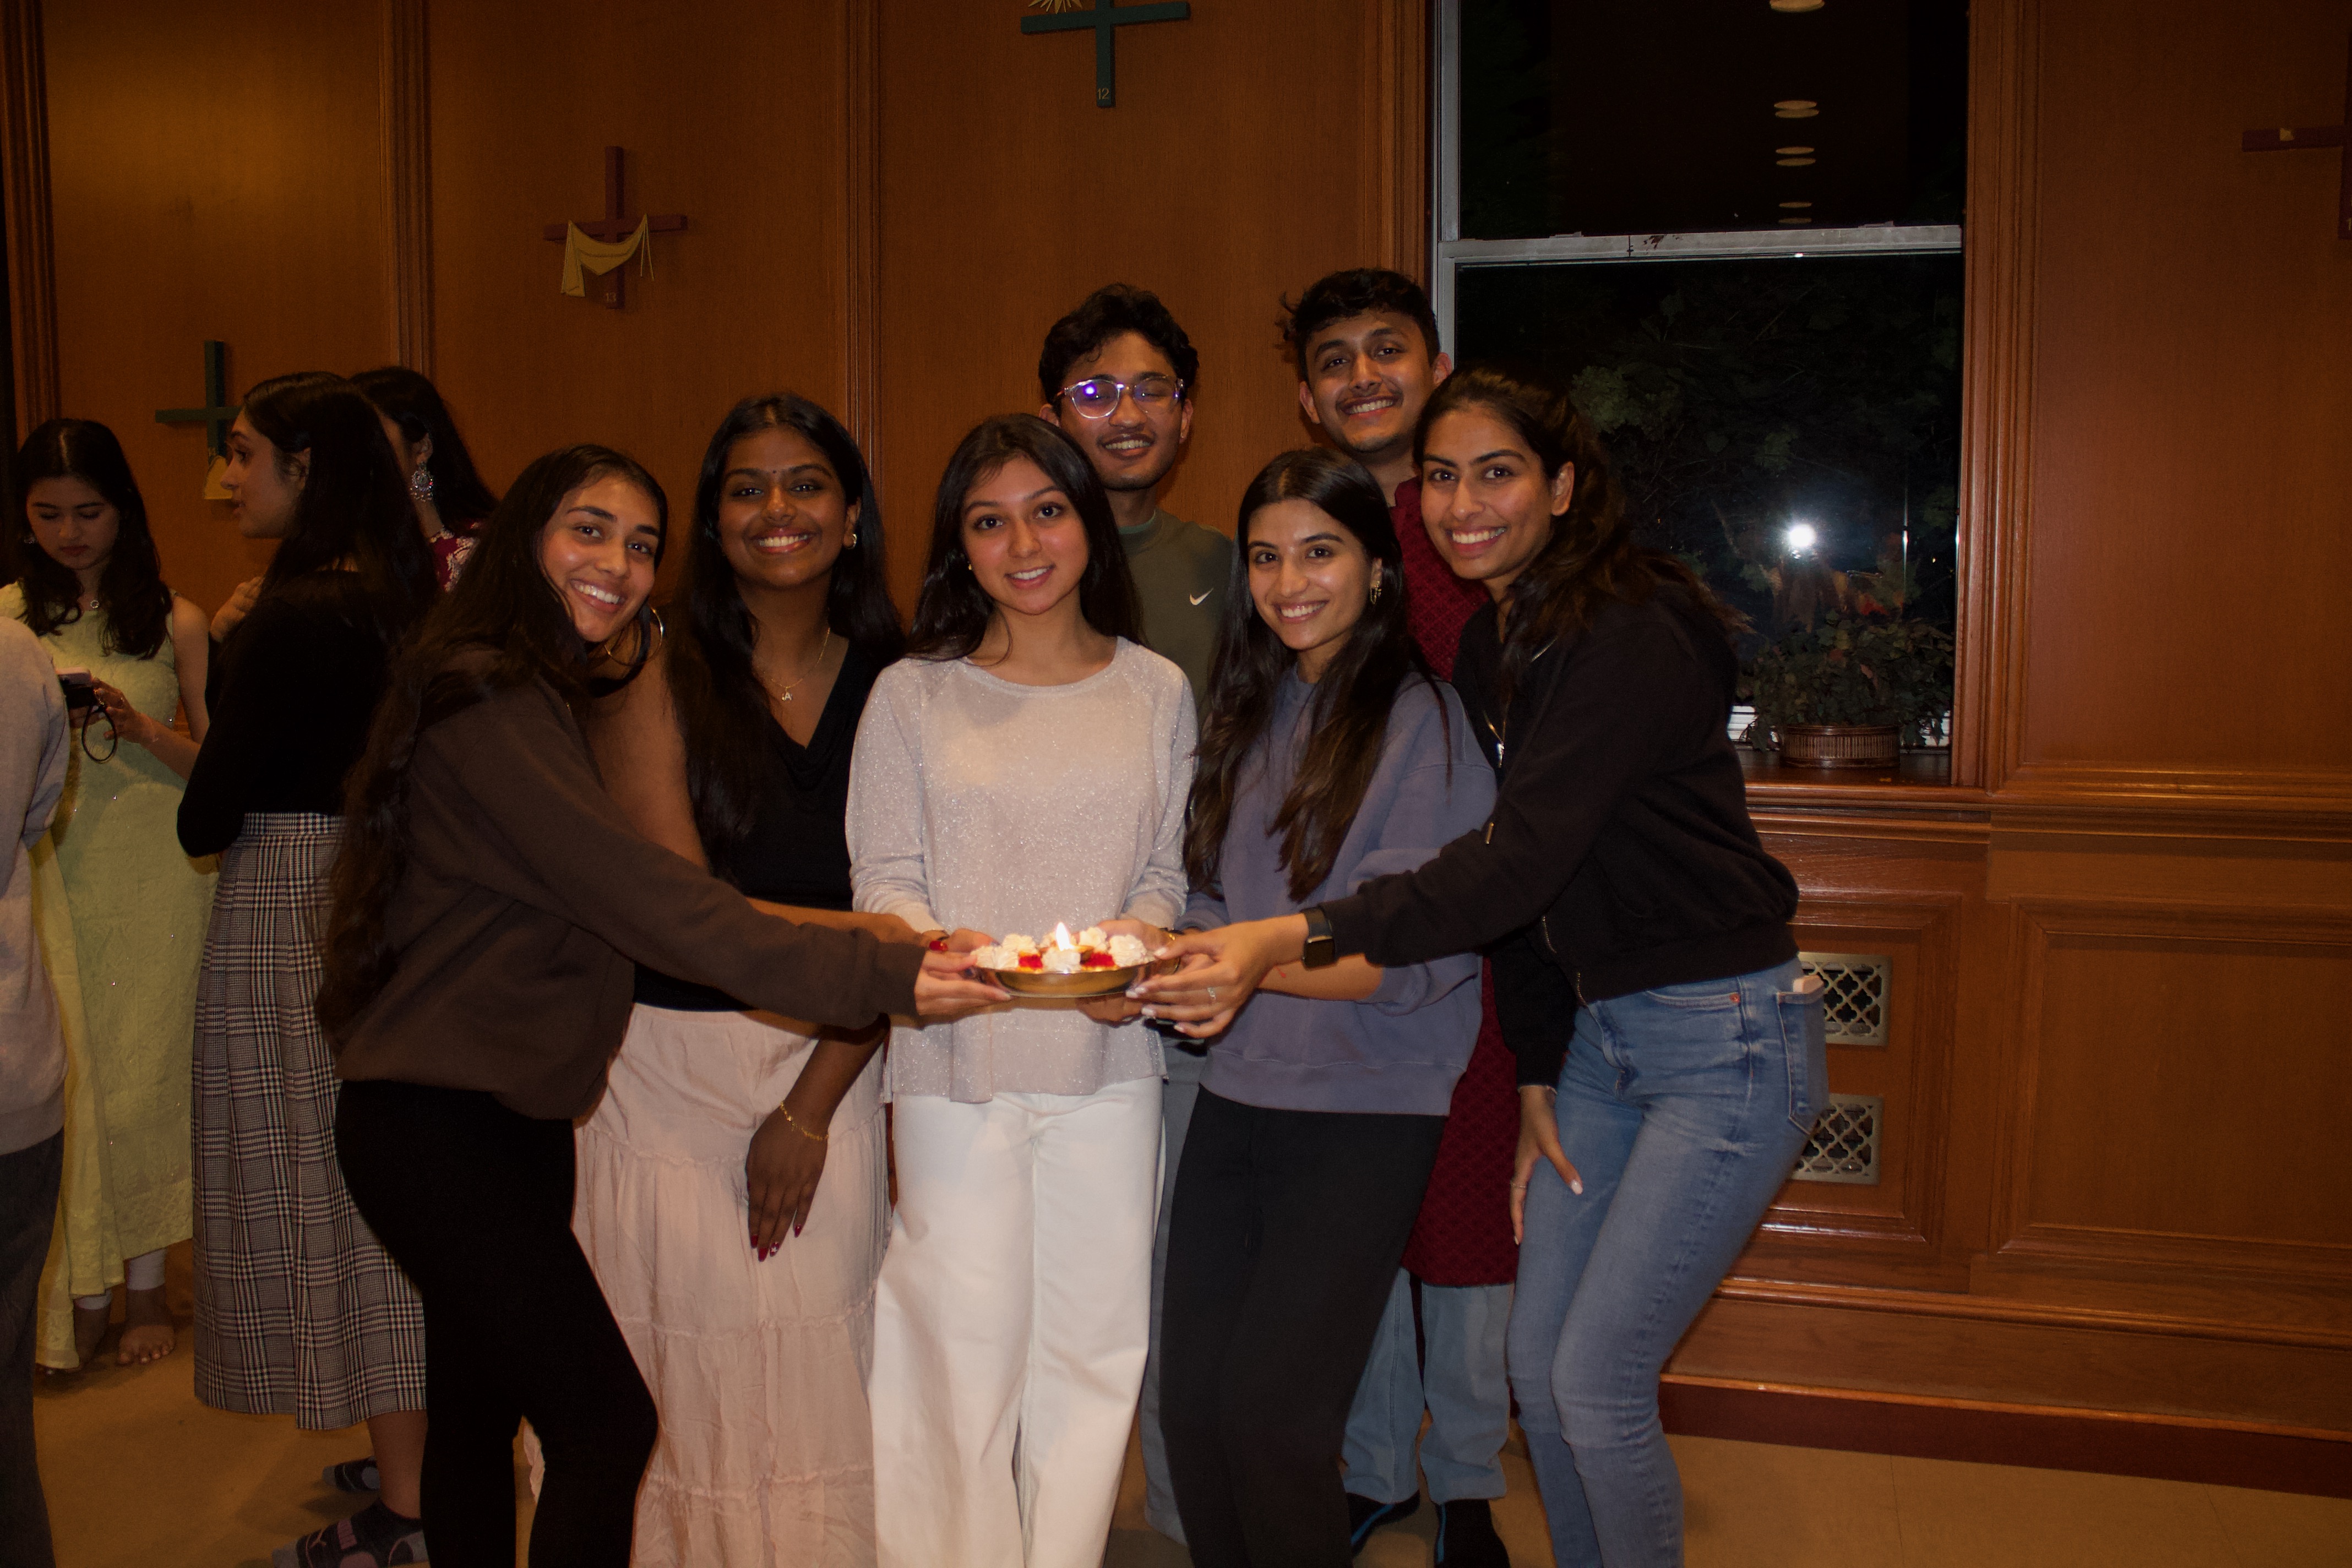 Students gather to celebrate Hindu Holdiay